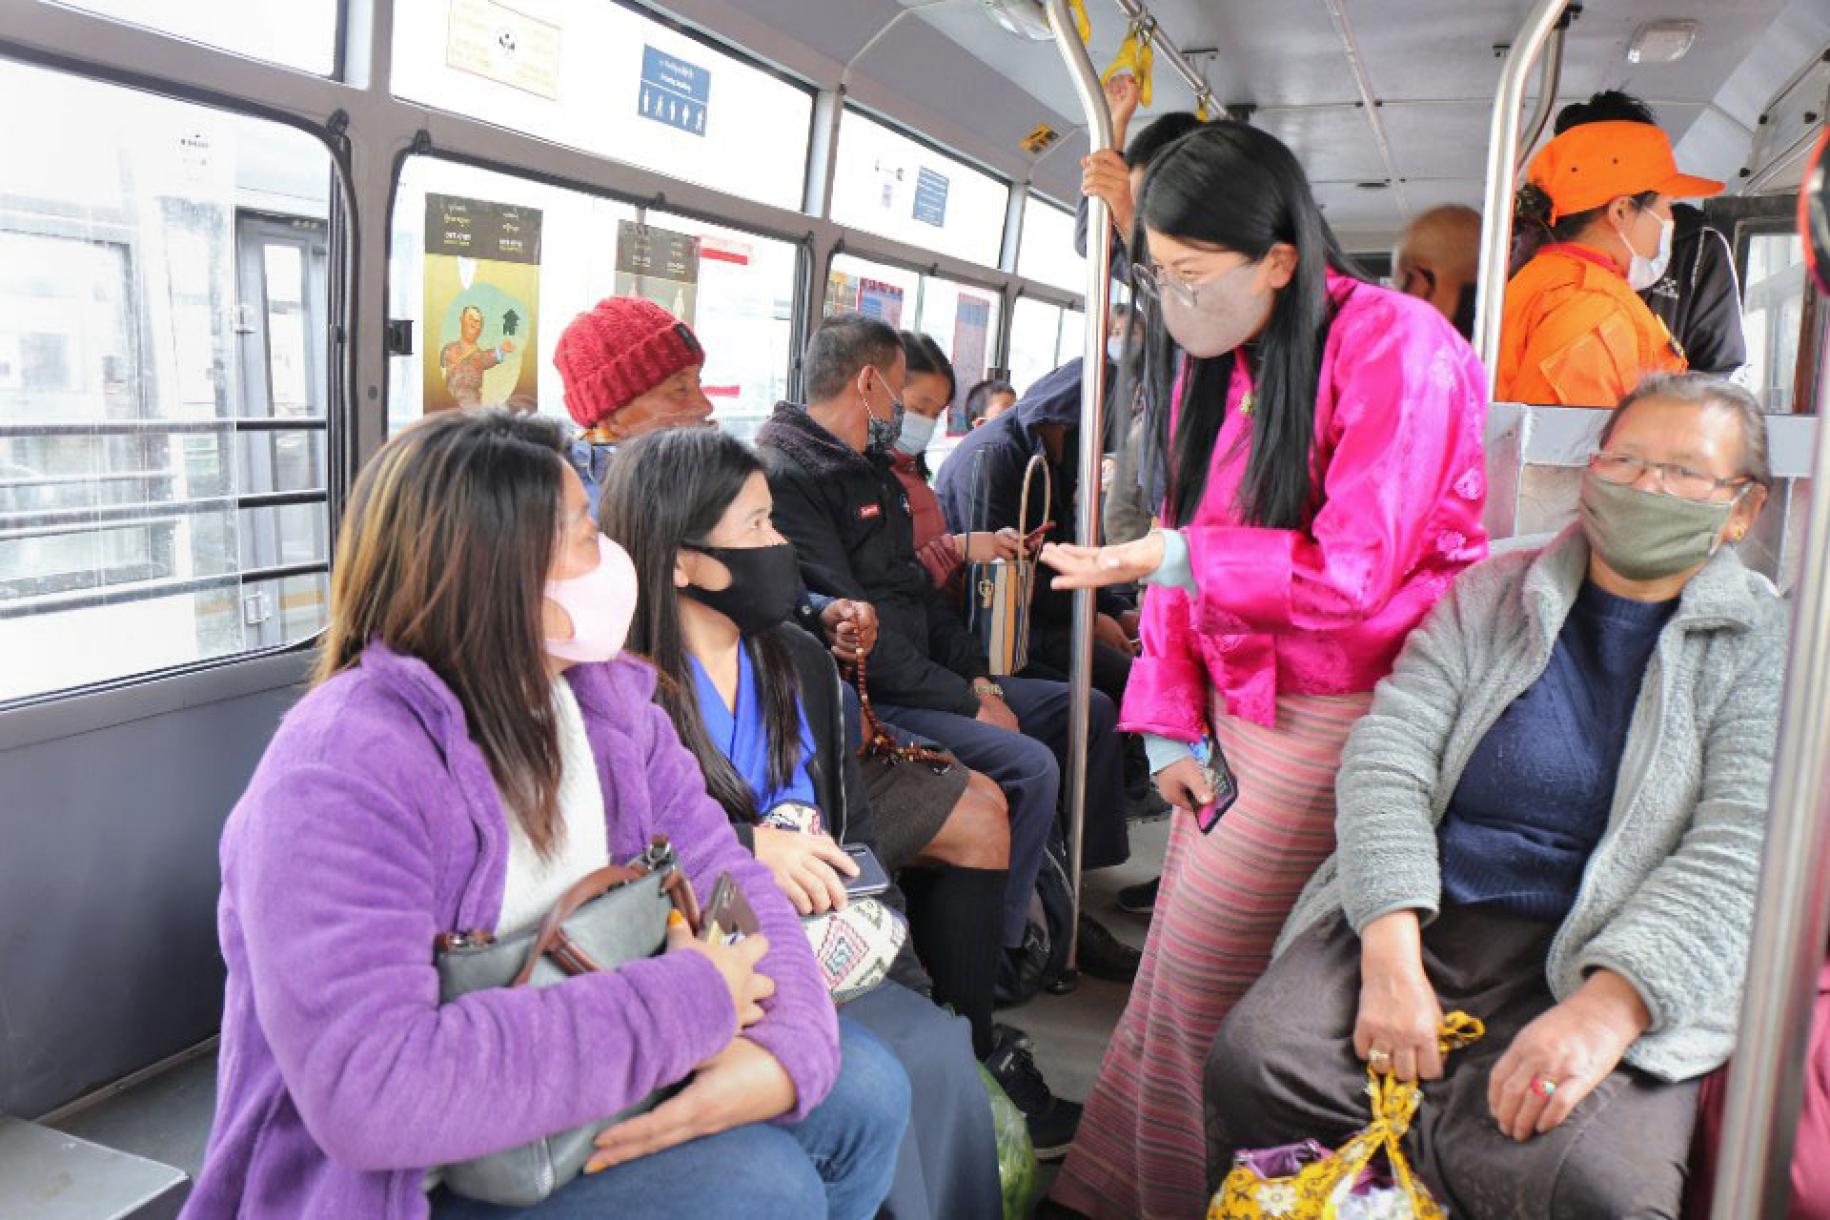 أشخاص يرتدون أقنعة بألوان زاهية يركبون الحافلة.